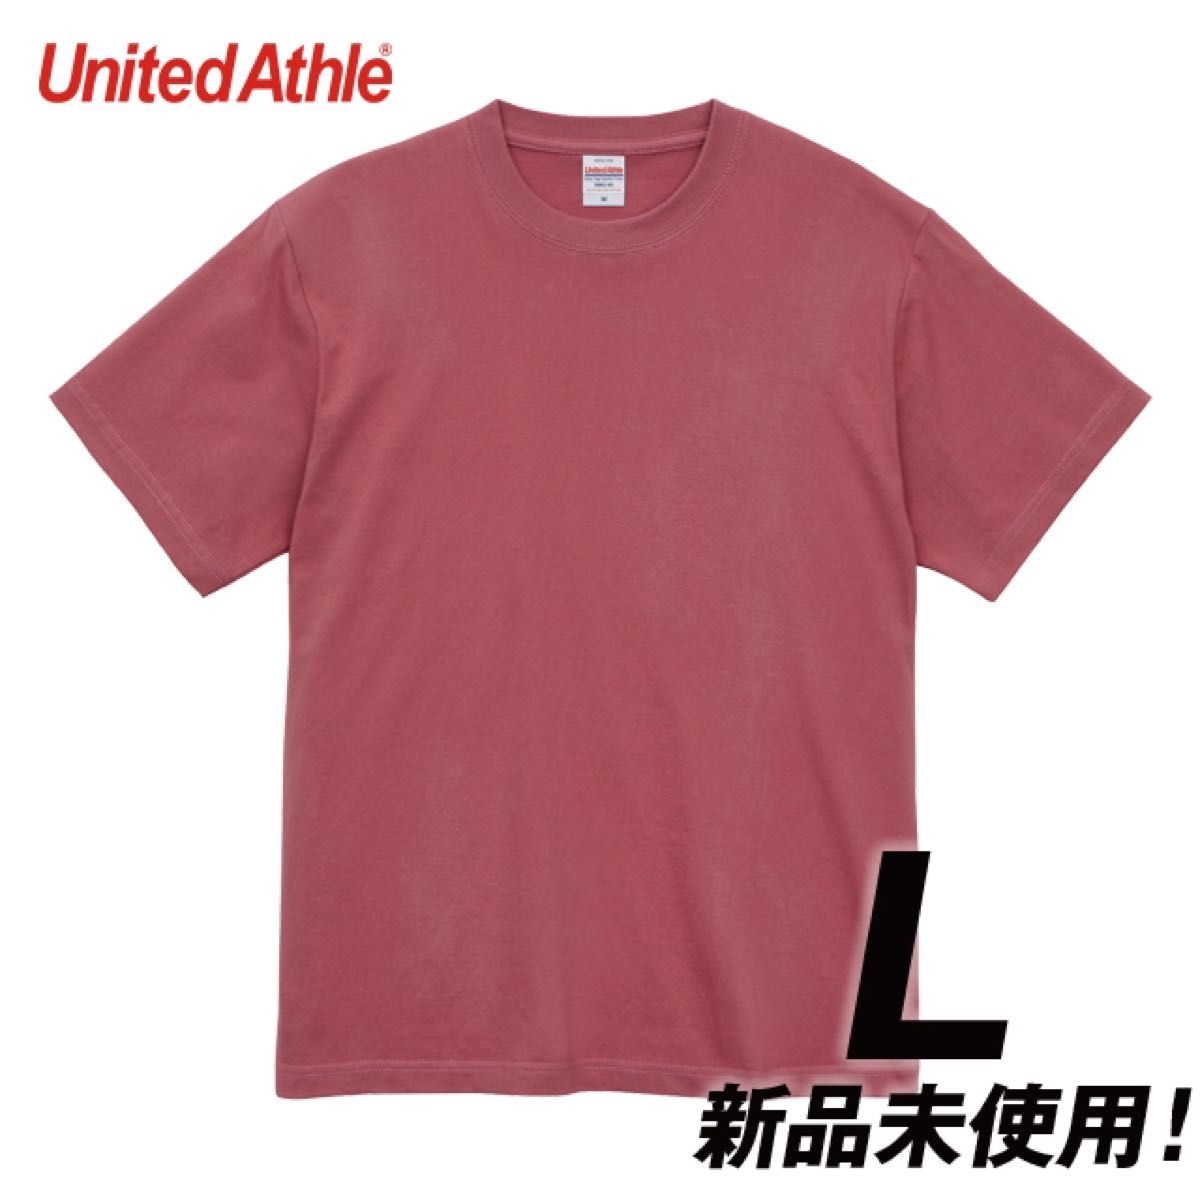 Tシャツ 半袖 5.6オンス ハイクオリティー【5001-01】L ヘイジーレッド 綿100%